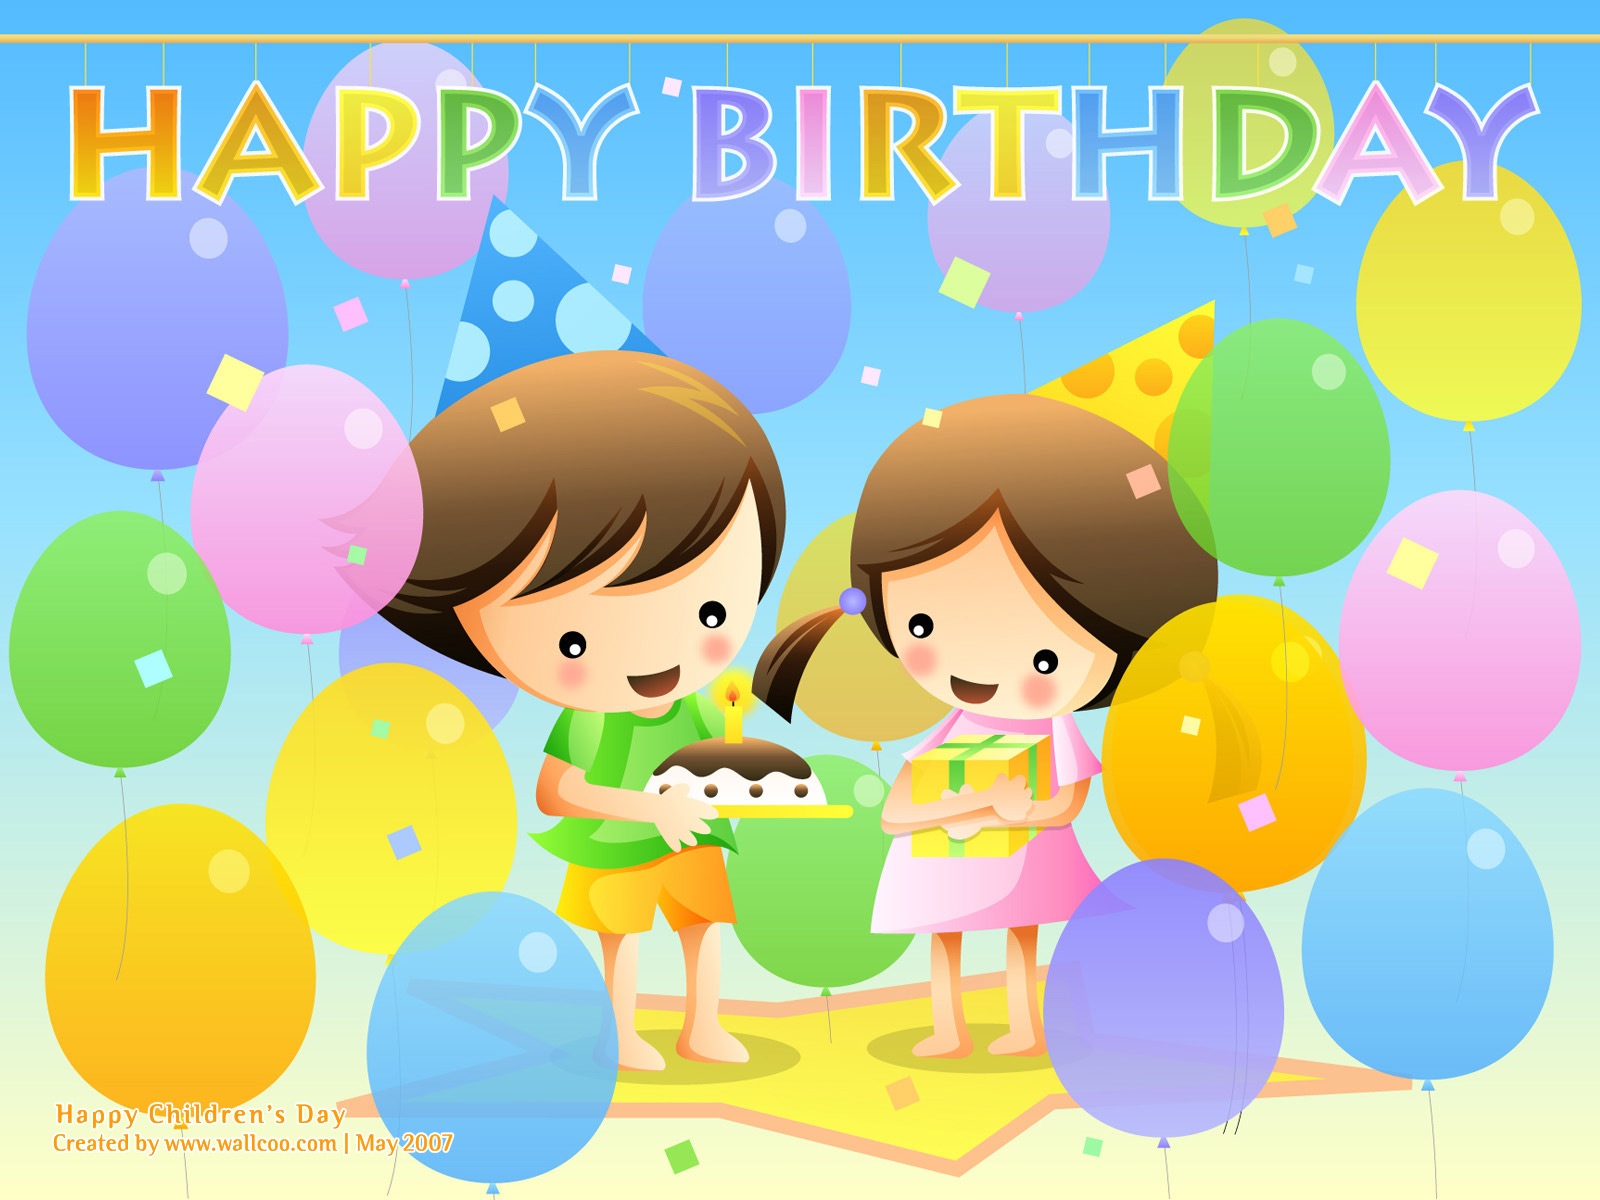 Childrens-Day-Happy-Birthday-697[1].jpg